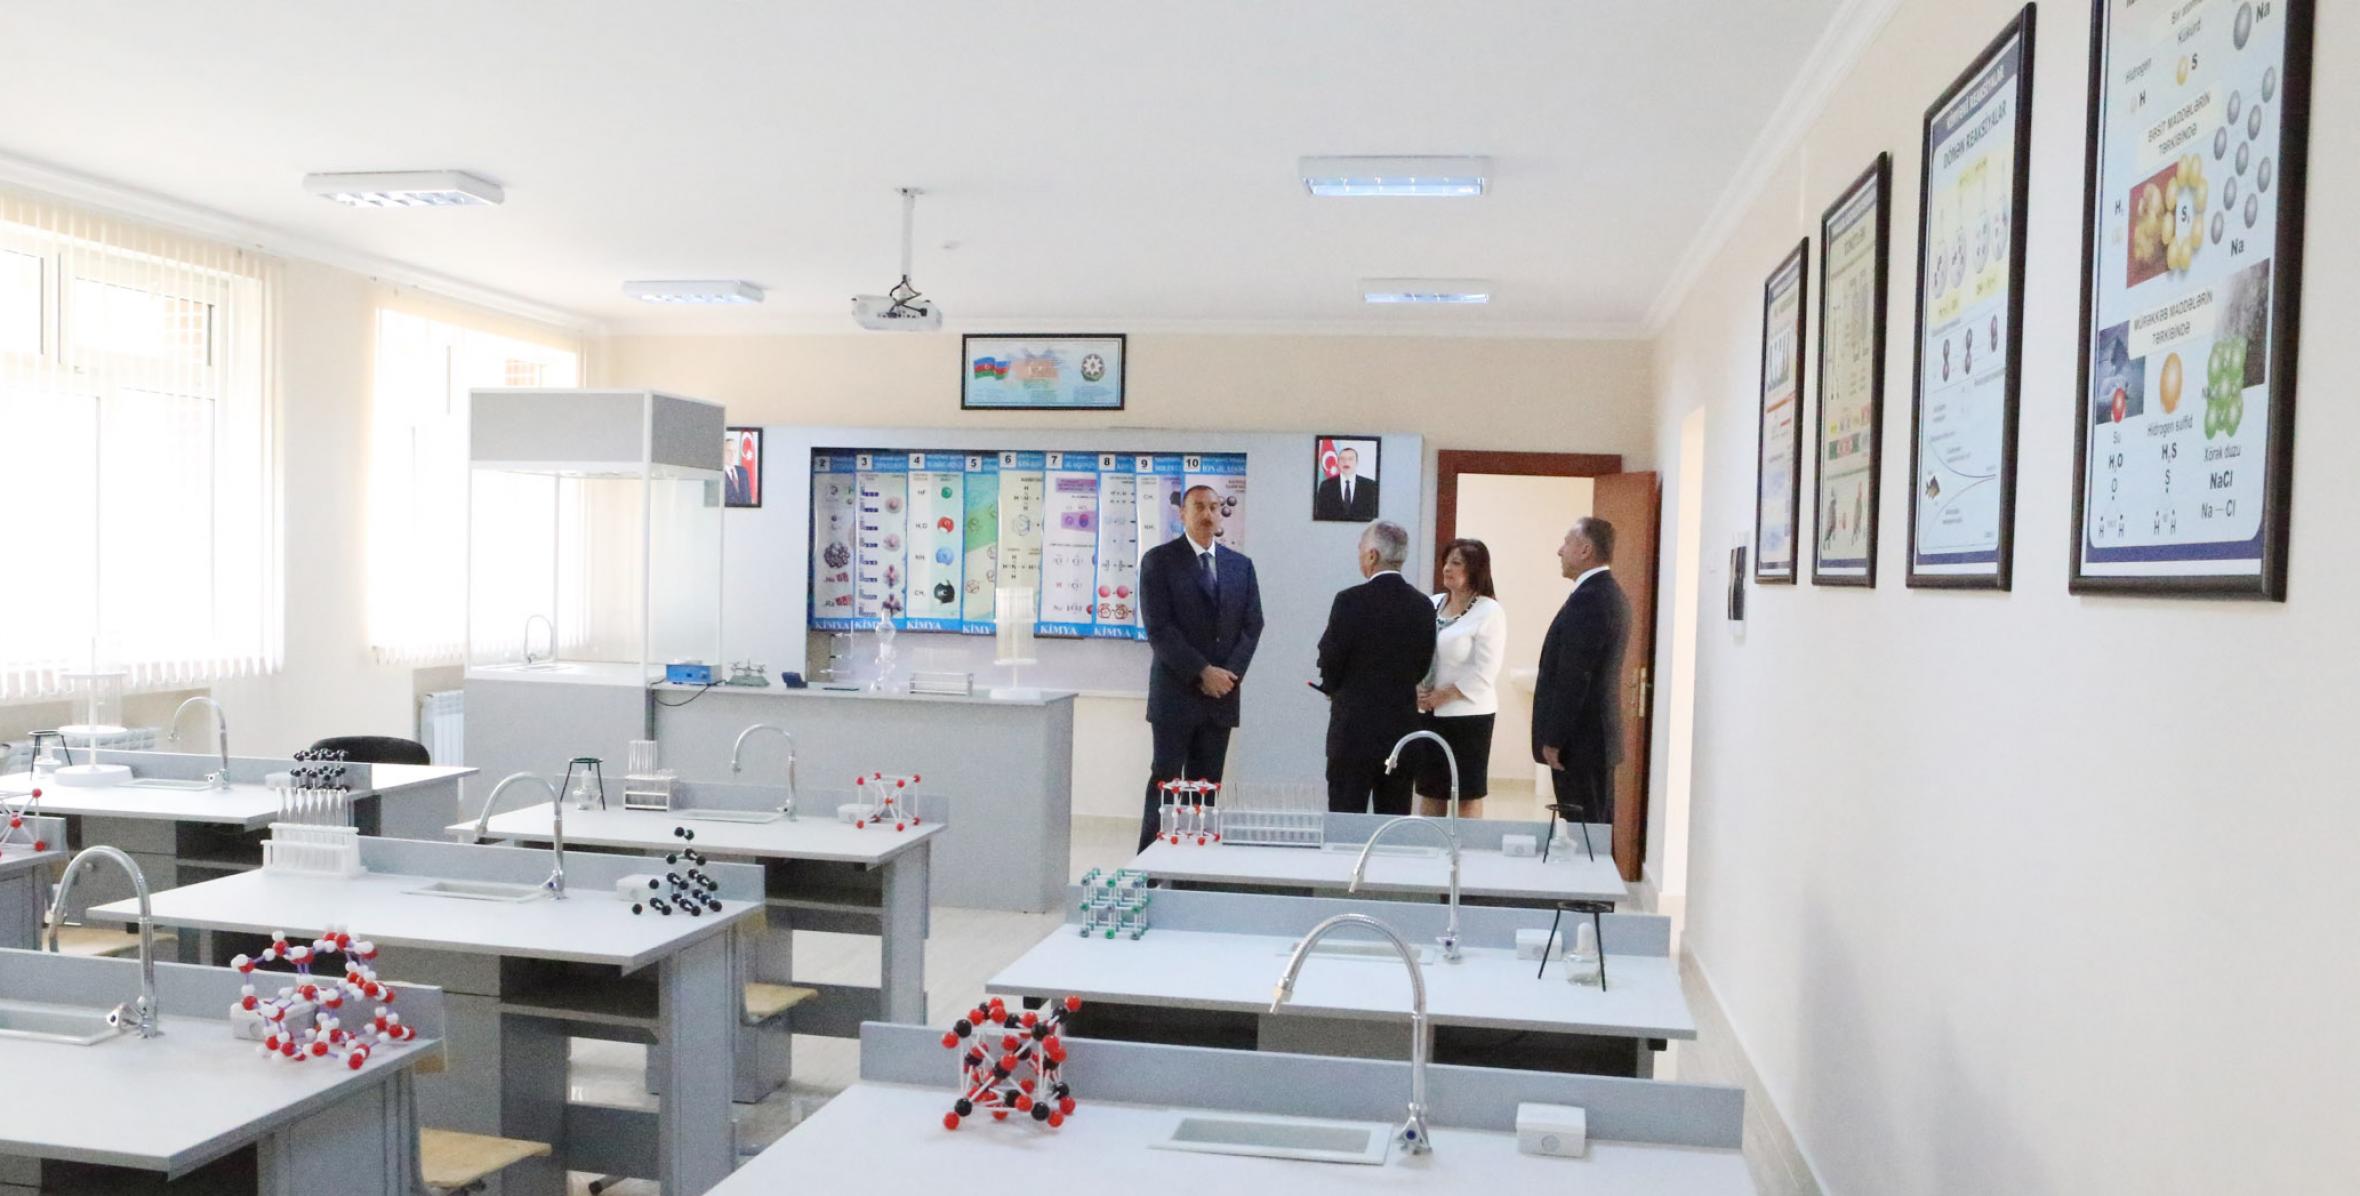 Ильхам Алиев ознакомился с состоянием школы номер 54 в Насиминском районе Баку после капитального ремонта и реконструкции